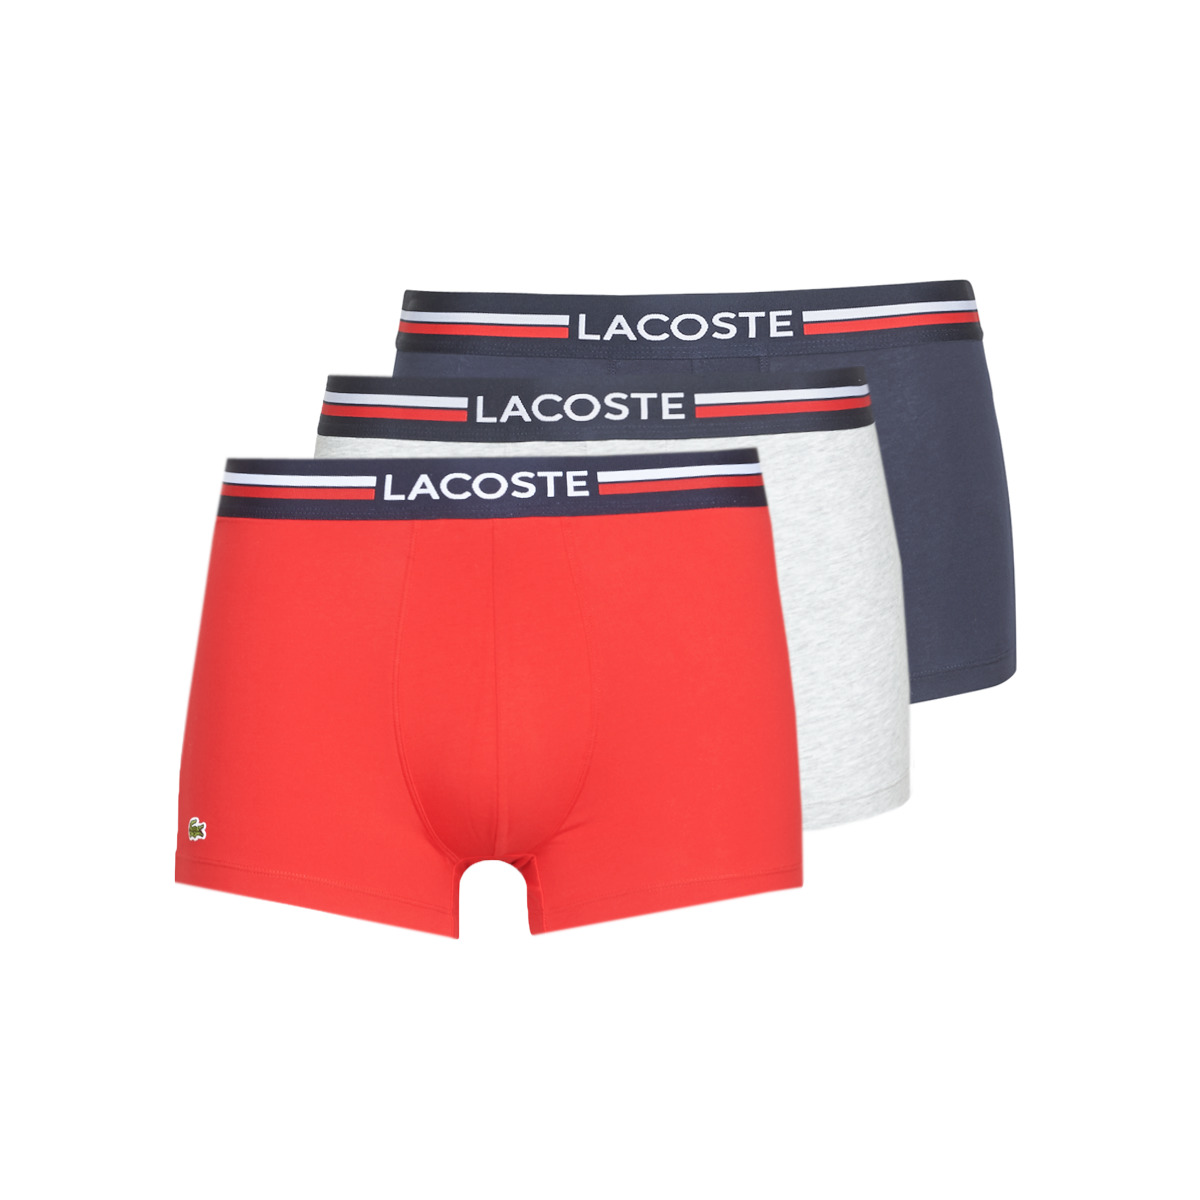 Lacoste Swim Shorts for Men Boxer Lacoste 5H3386-W34 Lacoste PartnerLux Sn23